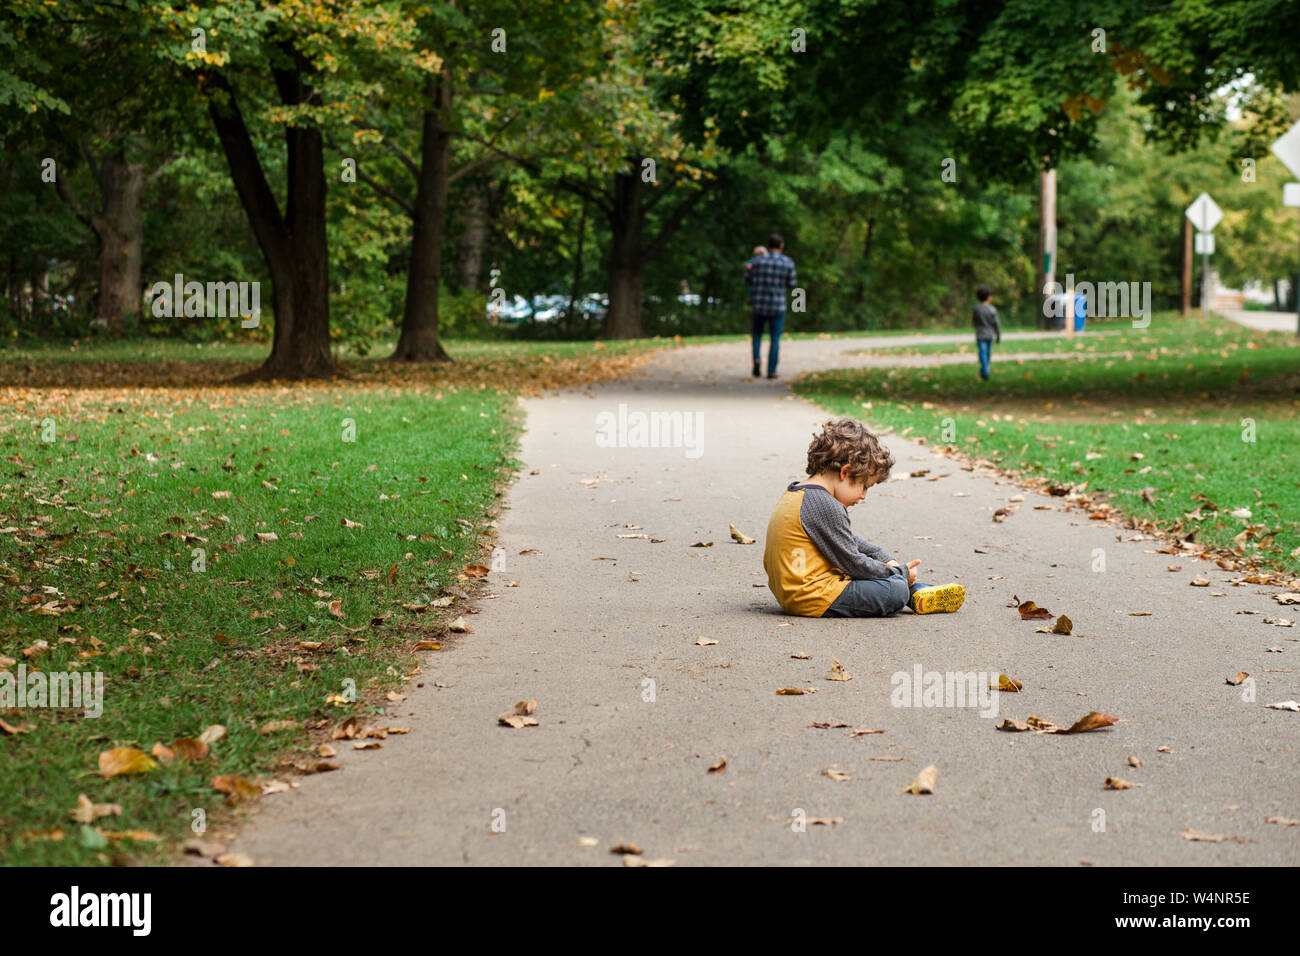 Un petit garçon est assis sur un chemin parsemé de feuilles que sa famille marche sur Banque D'Images